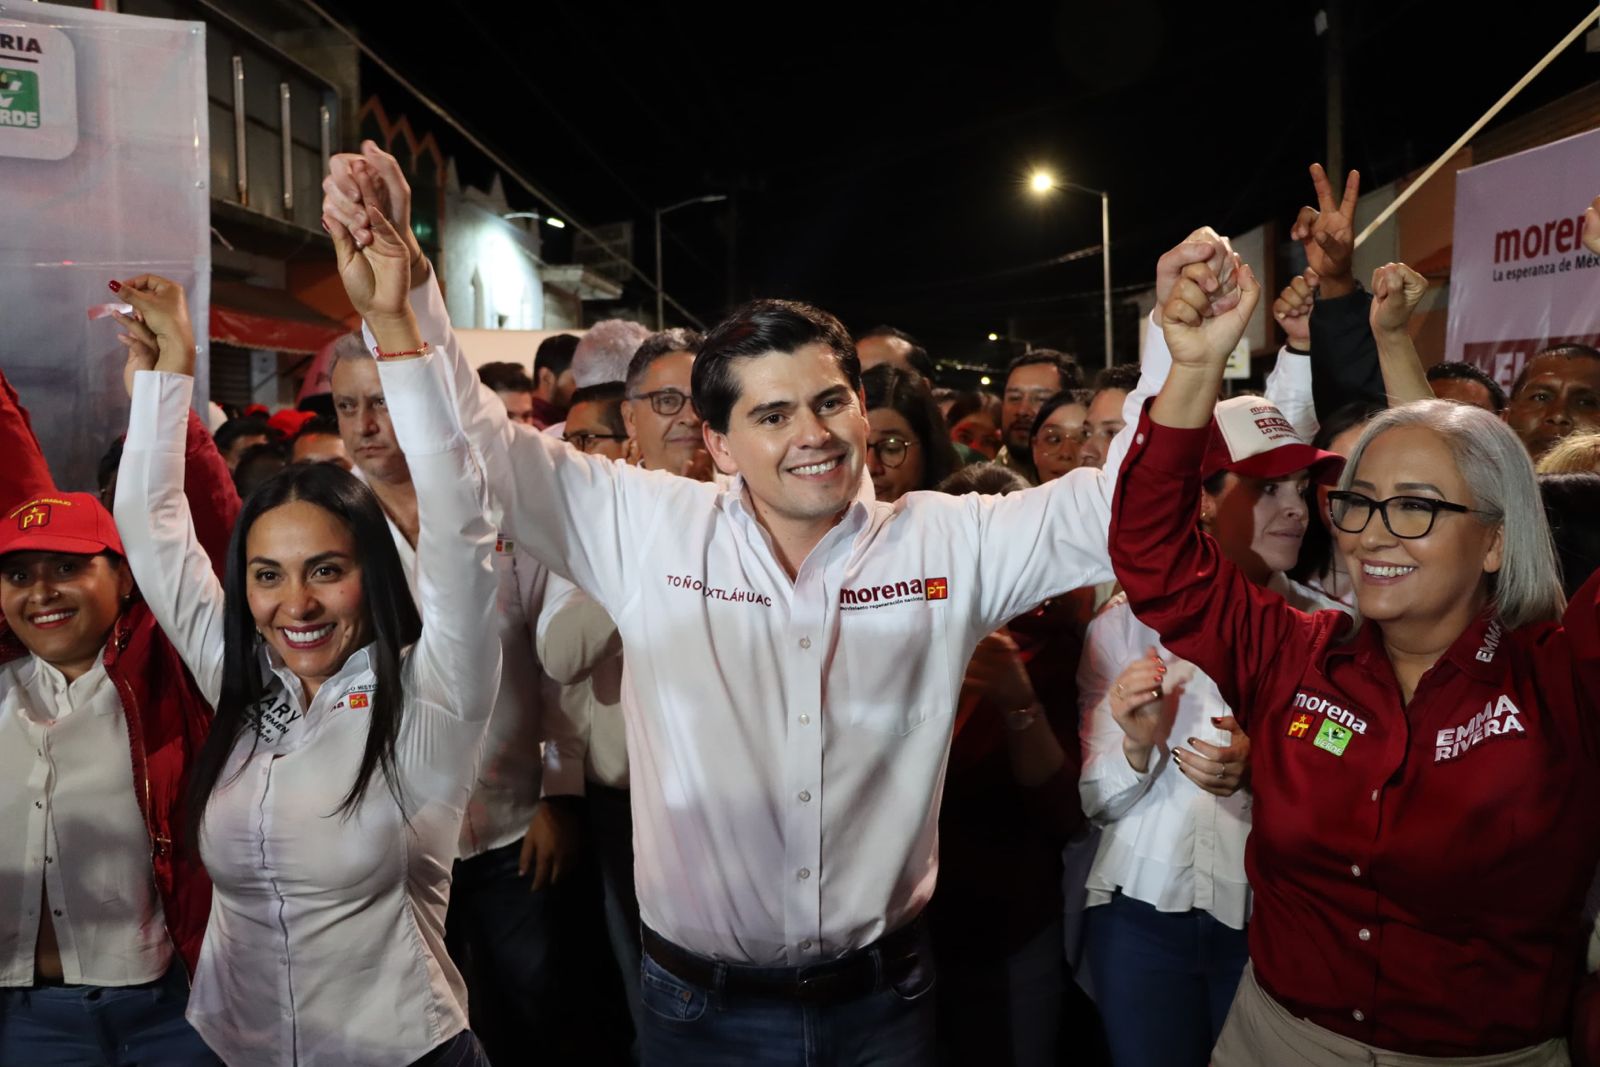 Toño Ixtláhuac arranca su campaña por la presidencia municipal de Zitácuaro a las 12:01 de la noche: “que ganen las ideas, el trabajo, la virtud y el esfuerzo”